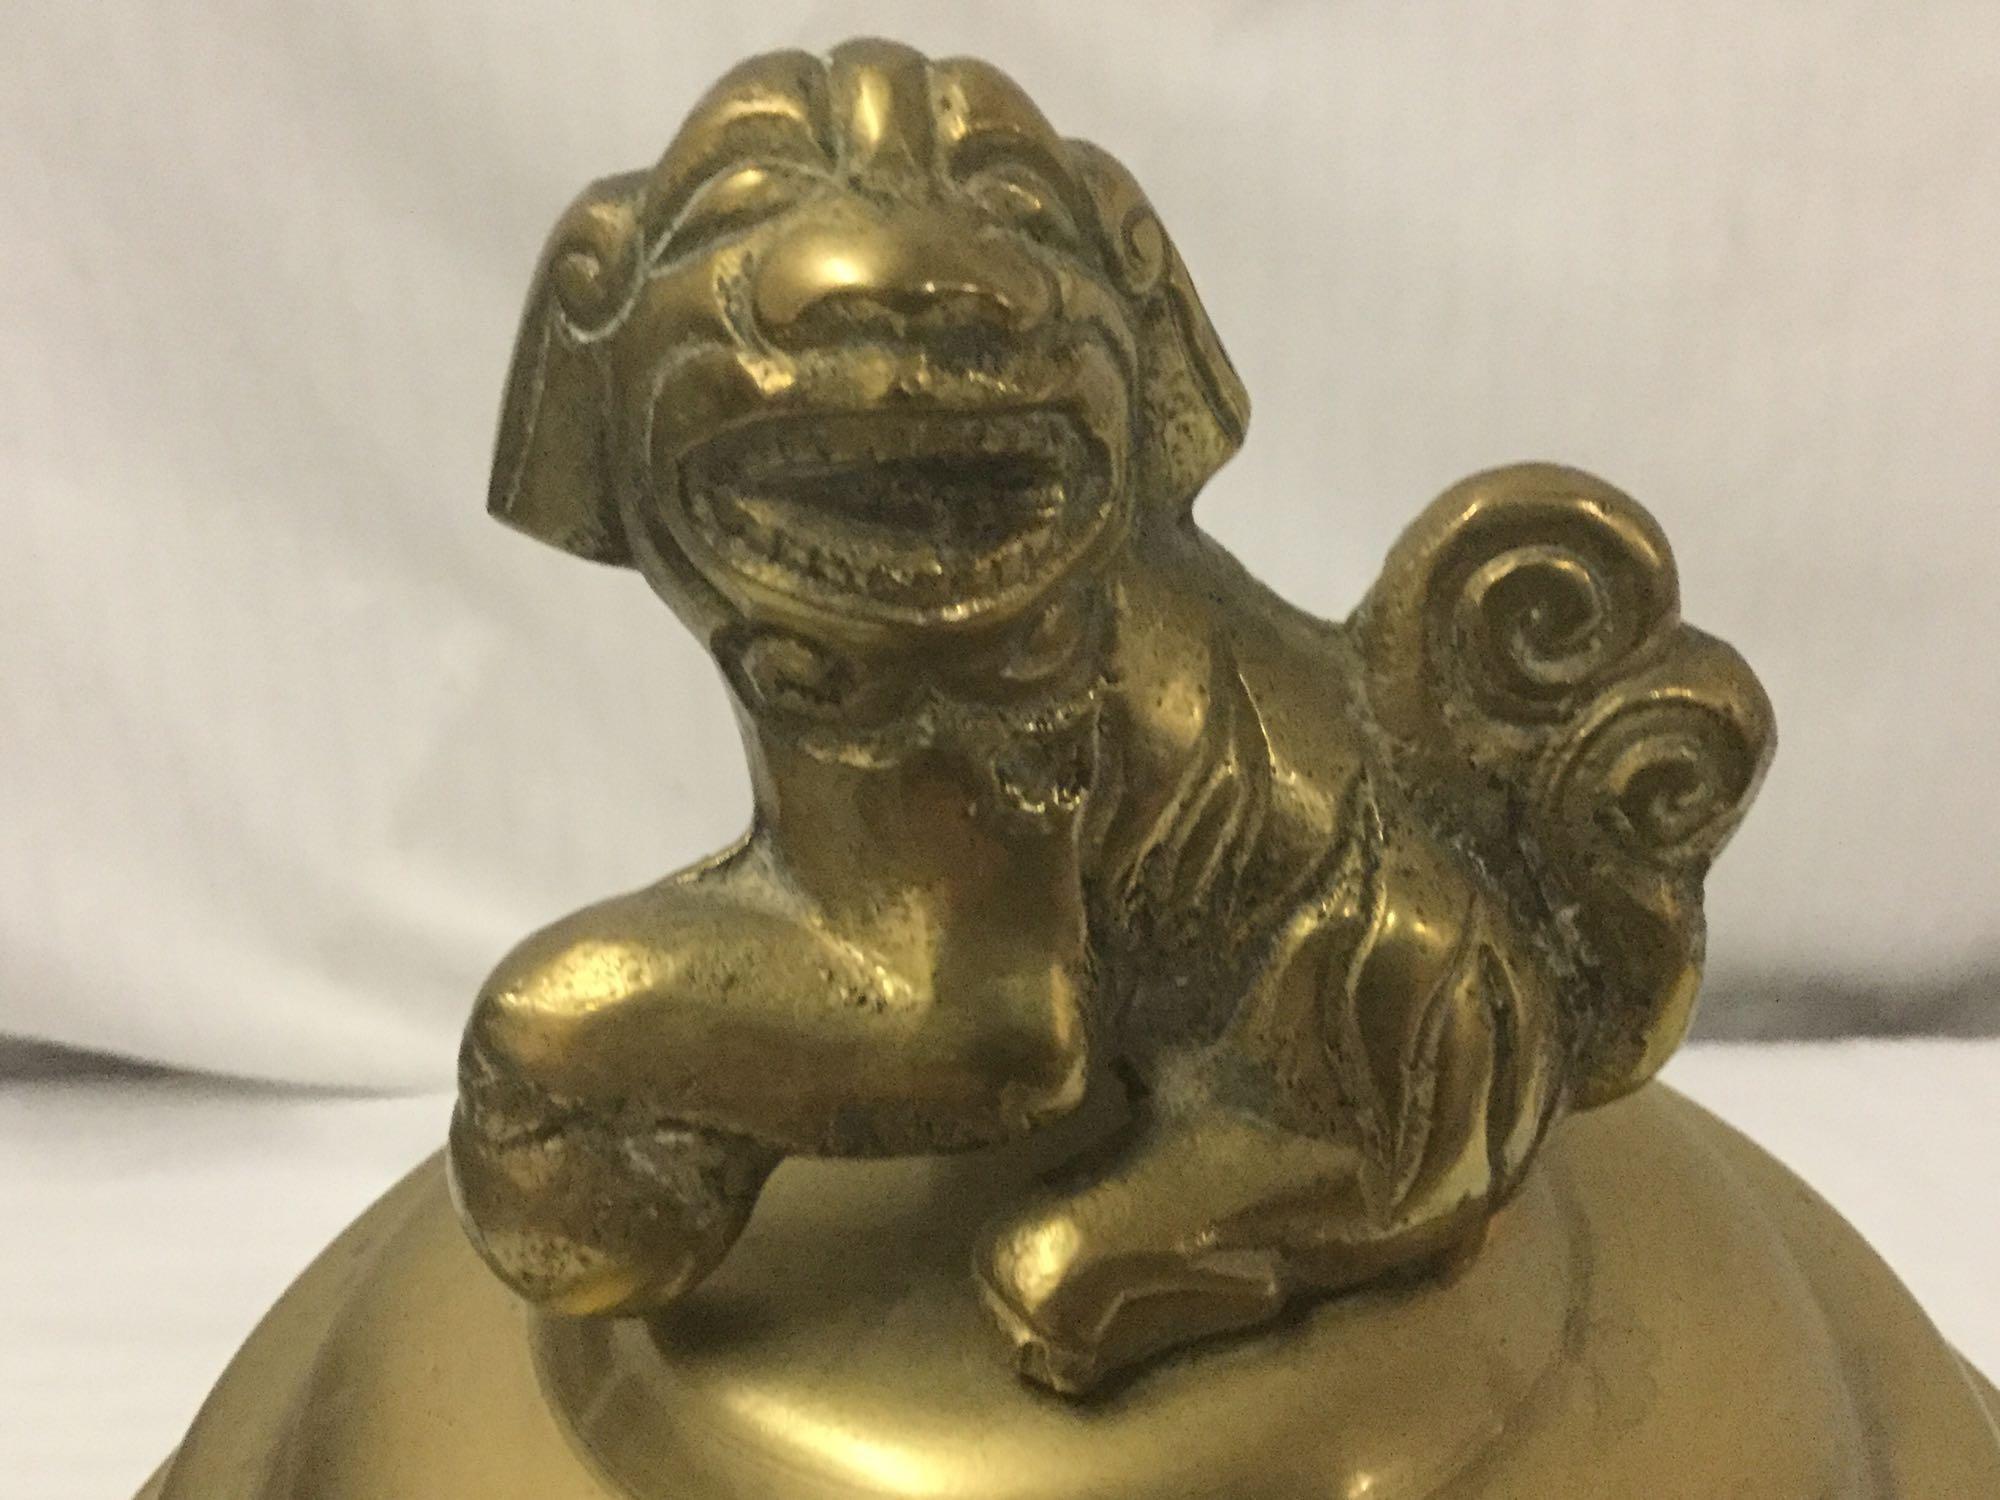 Vintage style Brass Foo Dog Incense Burner with Base